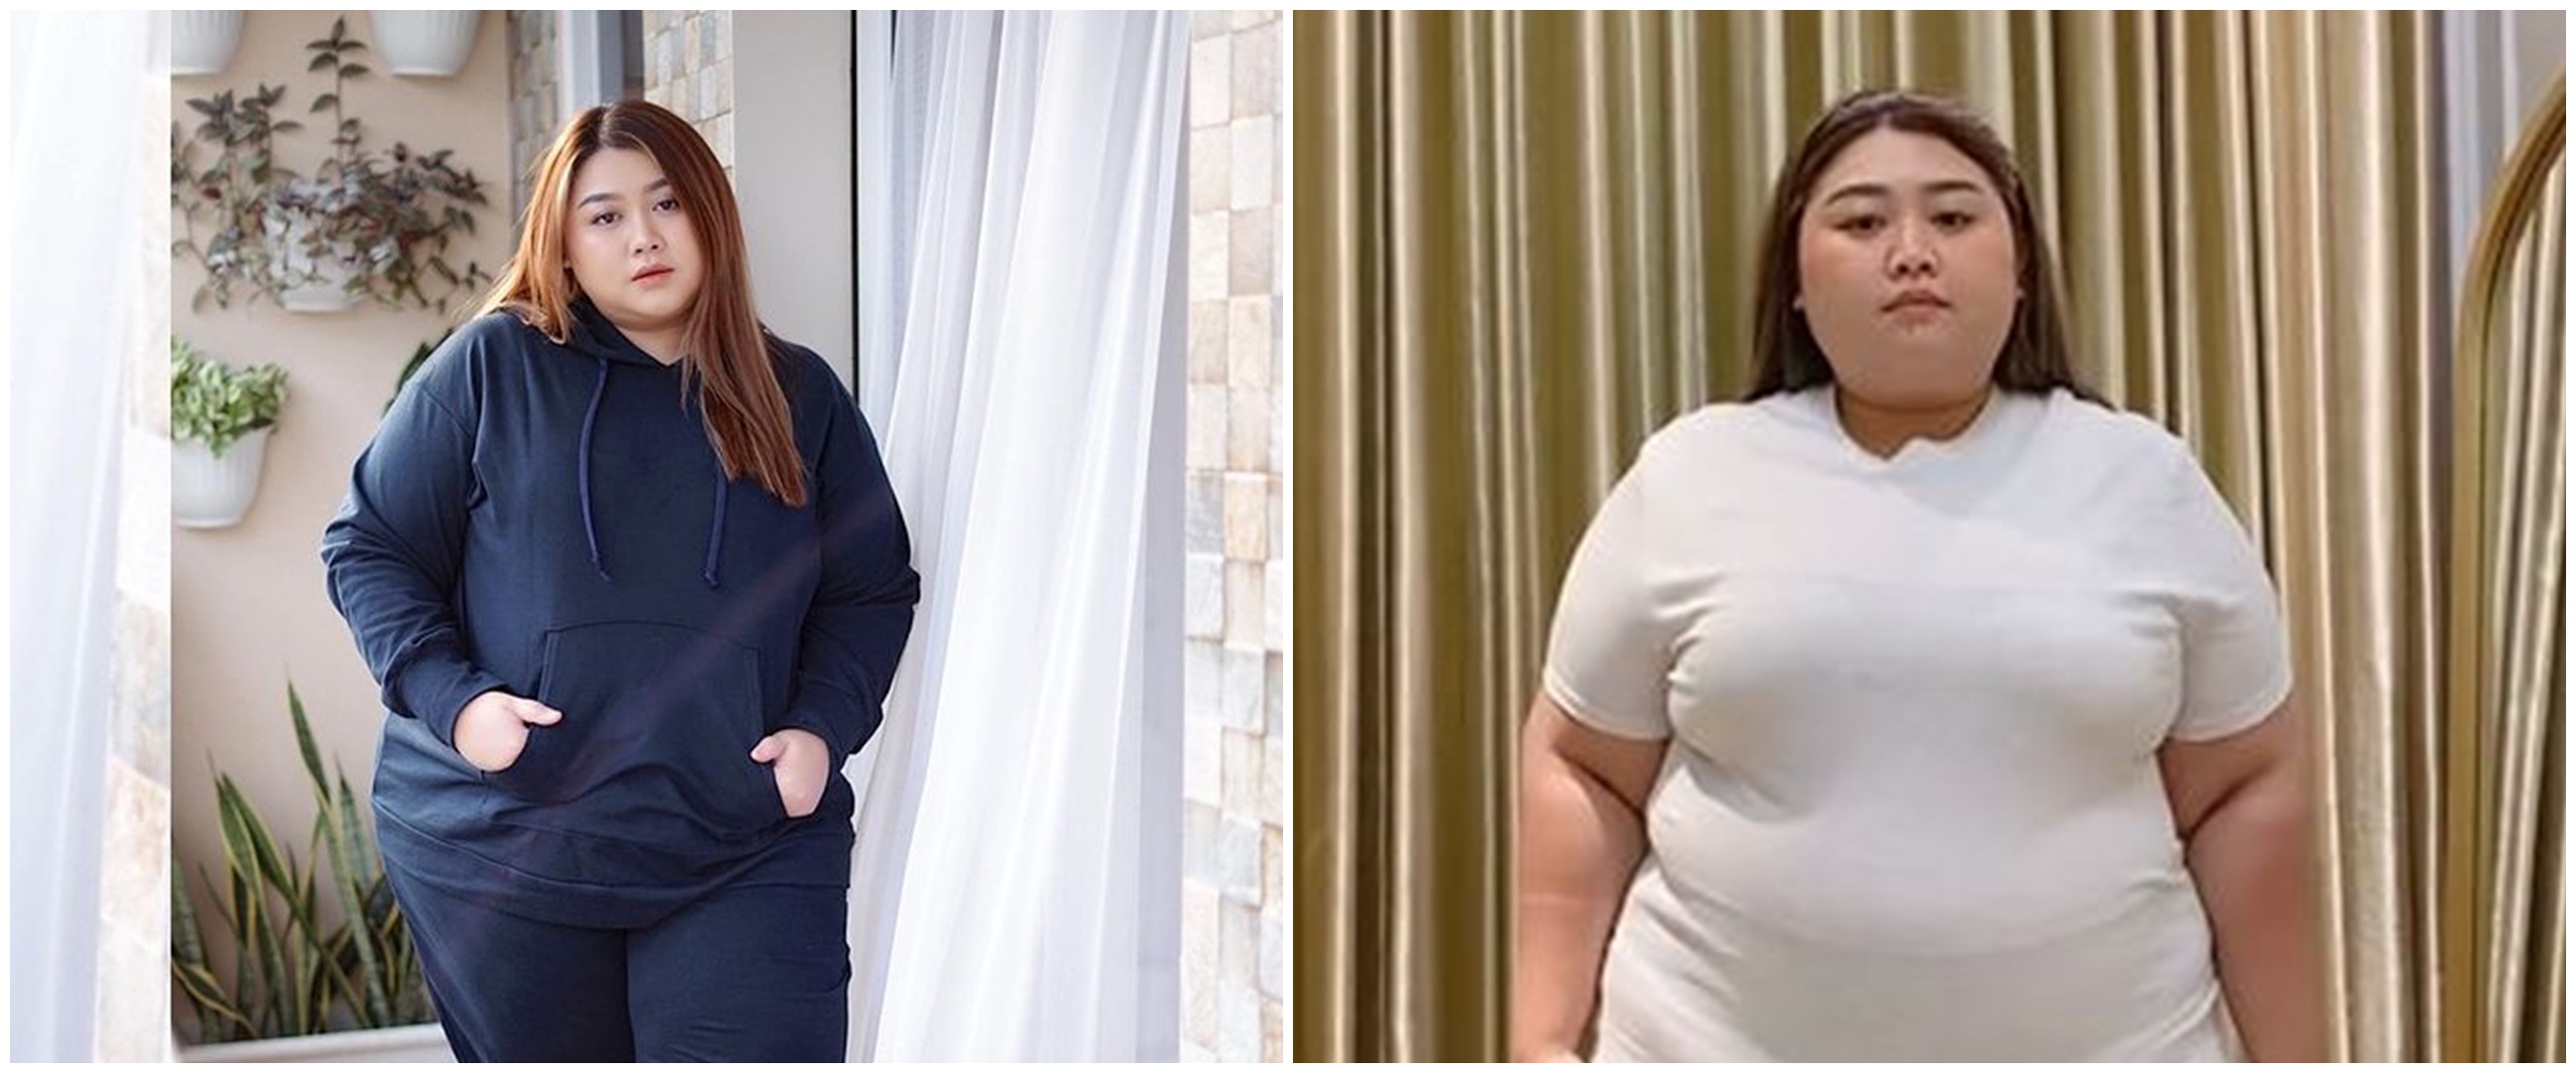 Turun 50 kg, 11 transformasi selebgram Clarissa Putri jalani diet